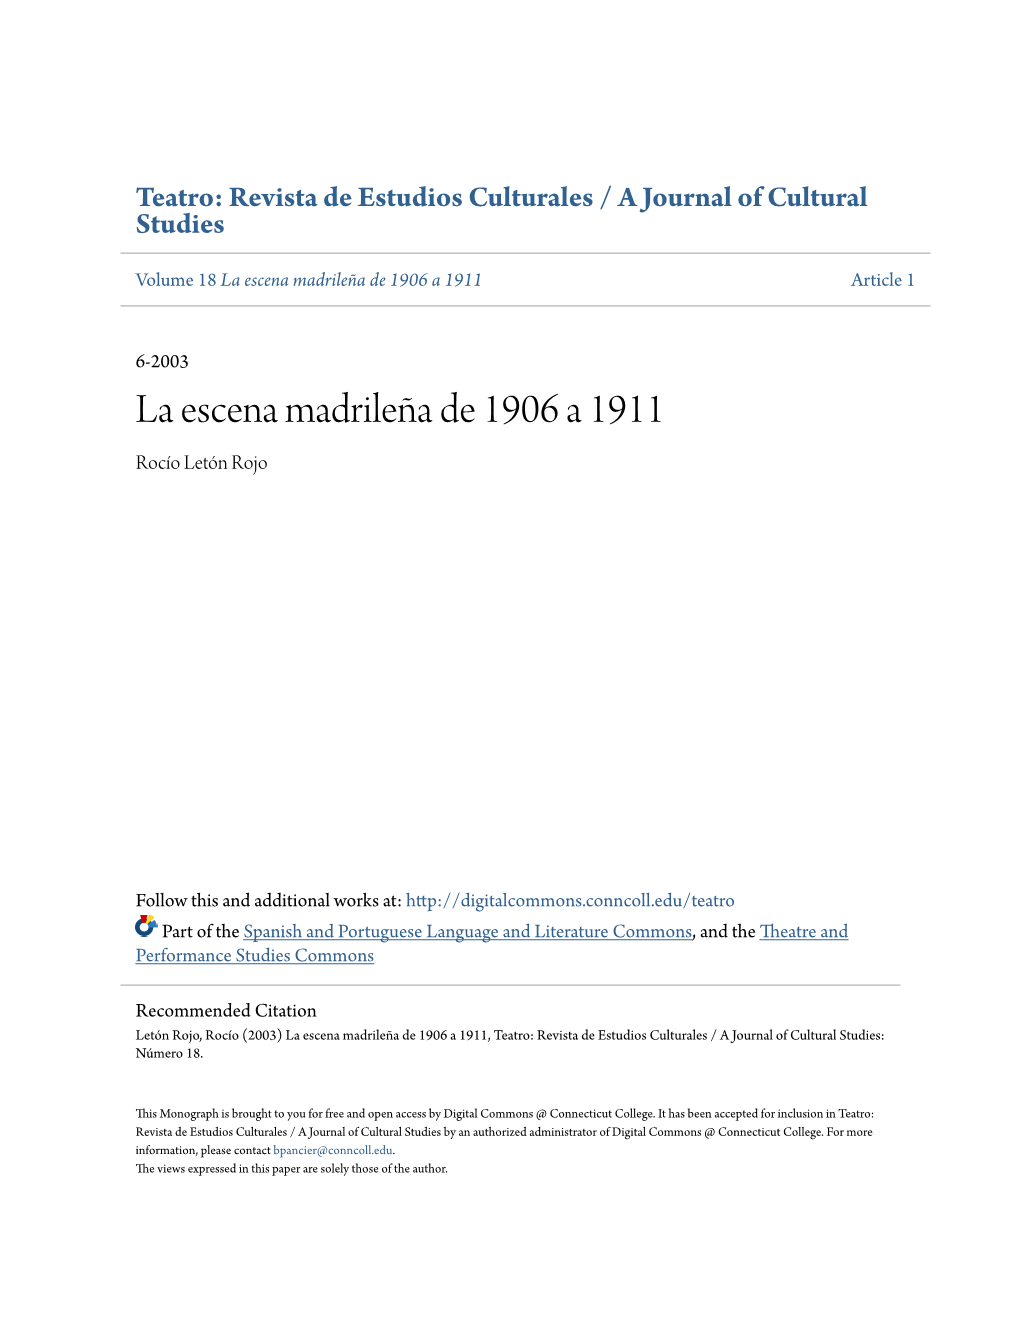 La Escena Madrileña De 1906 a 1911 Article 1